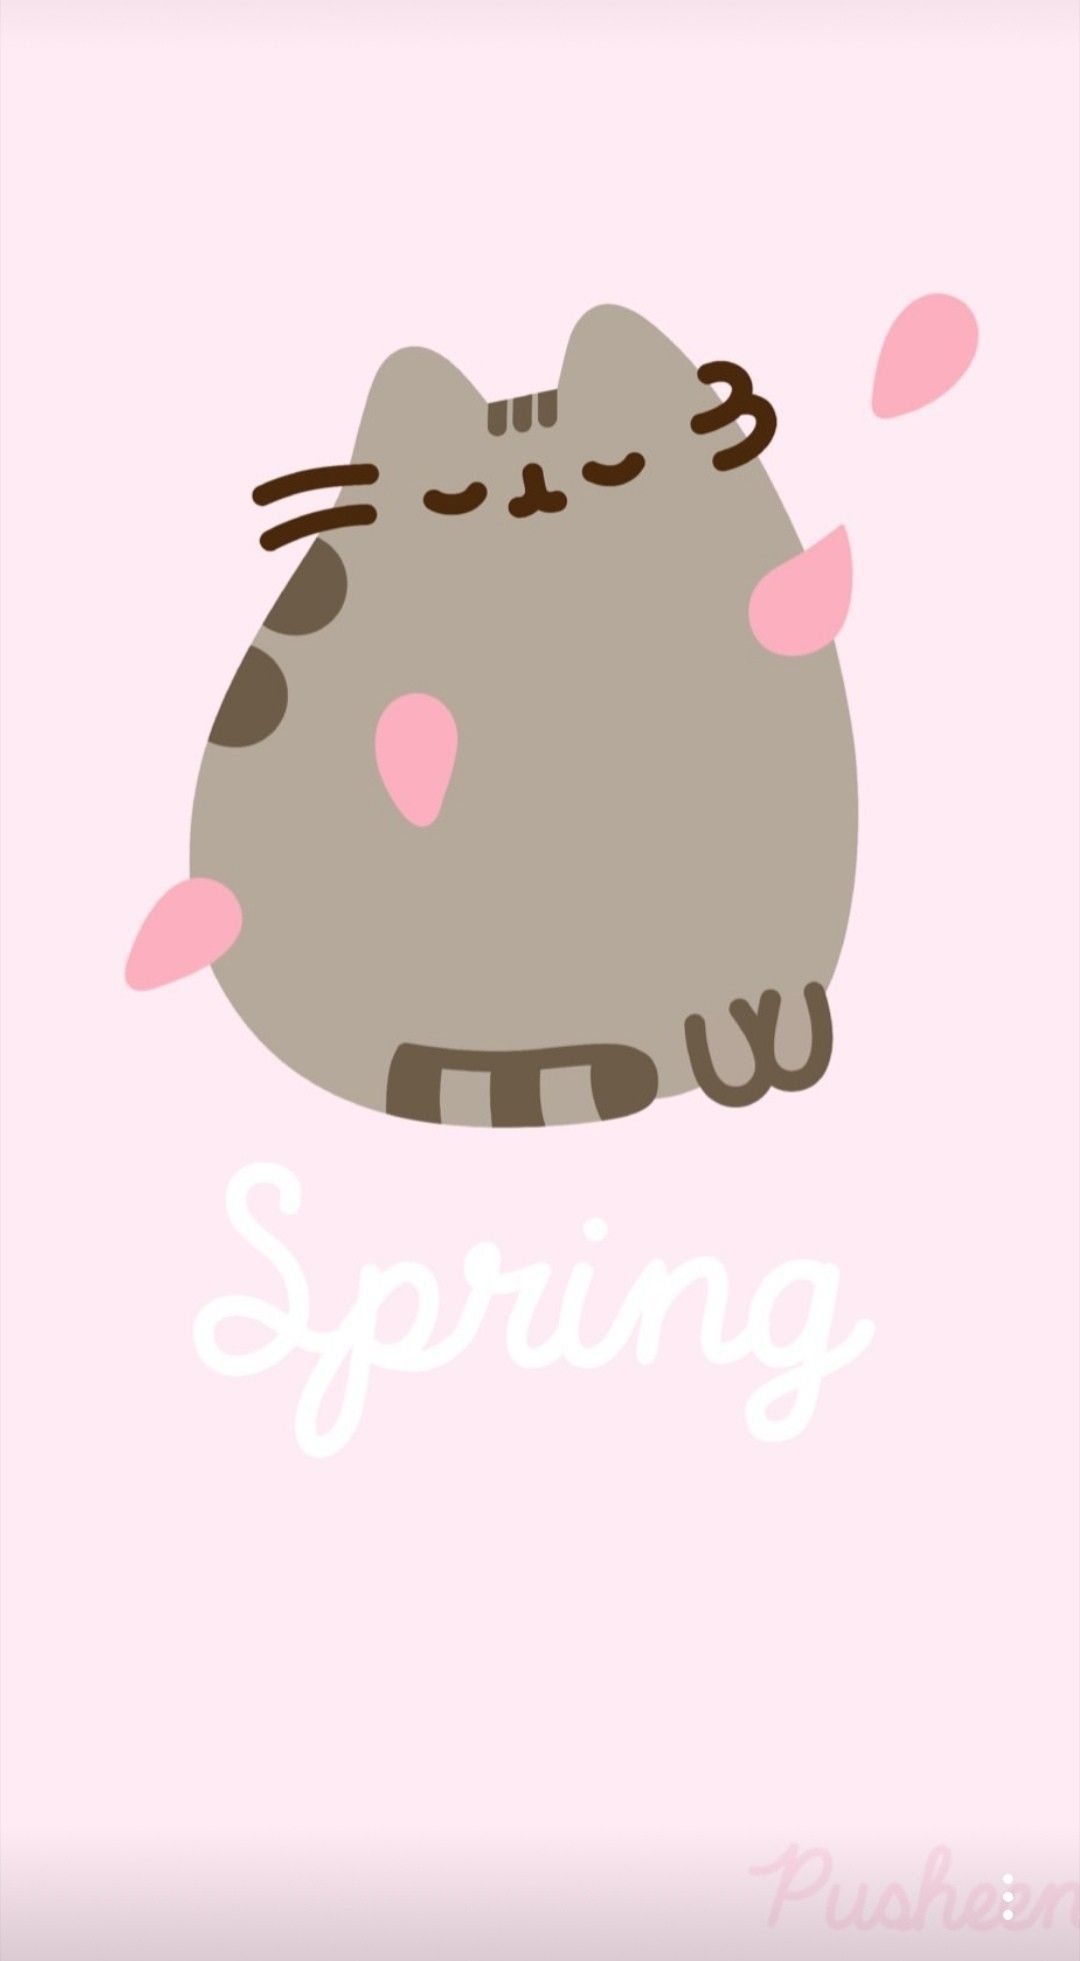 Happy Spring by Pusheen. Pusheen cat, Pusheen cute, Pusheen